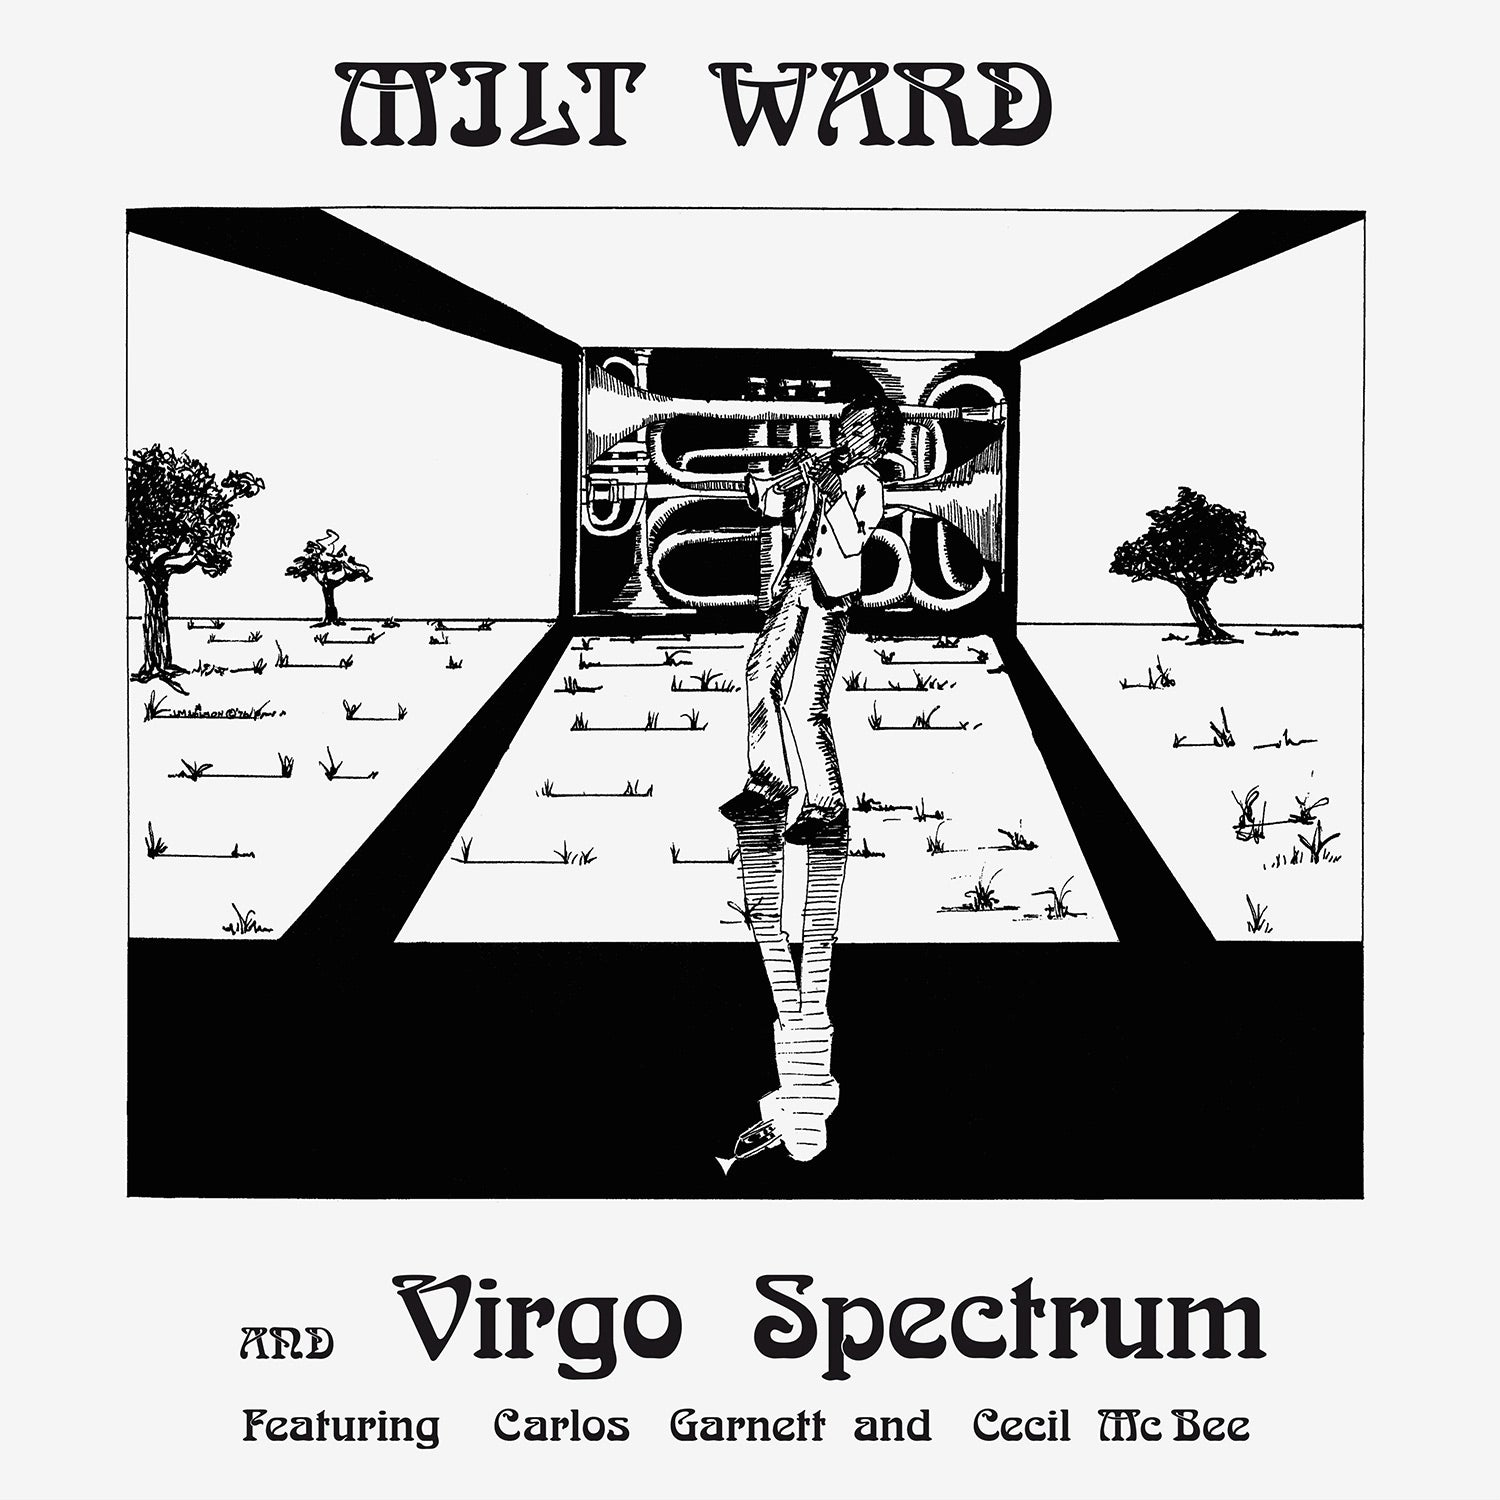 Milt-Ward-album-cover.jpg?v=1653511542